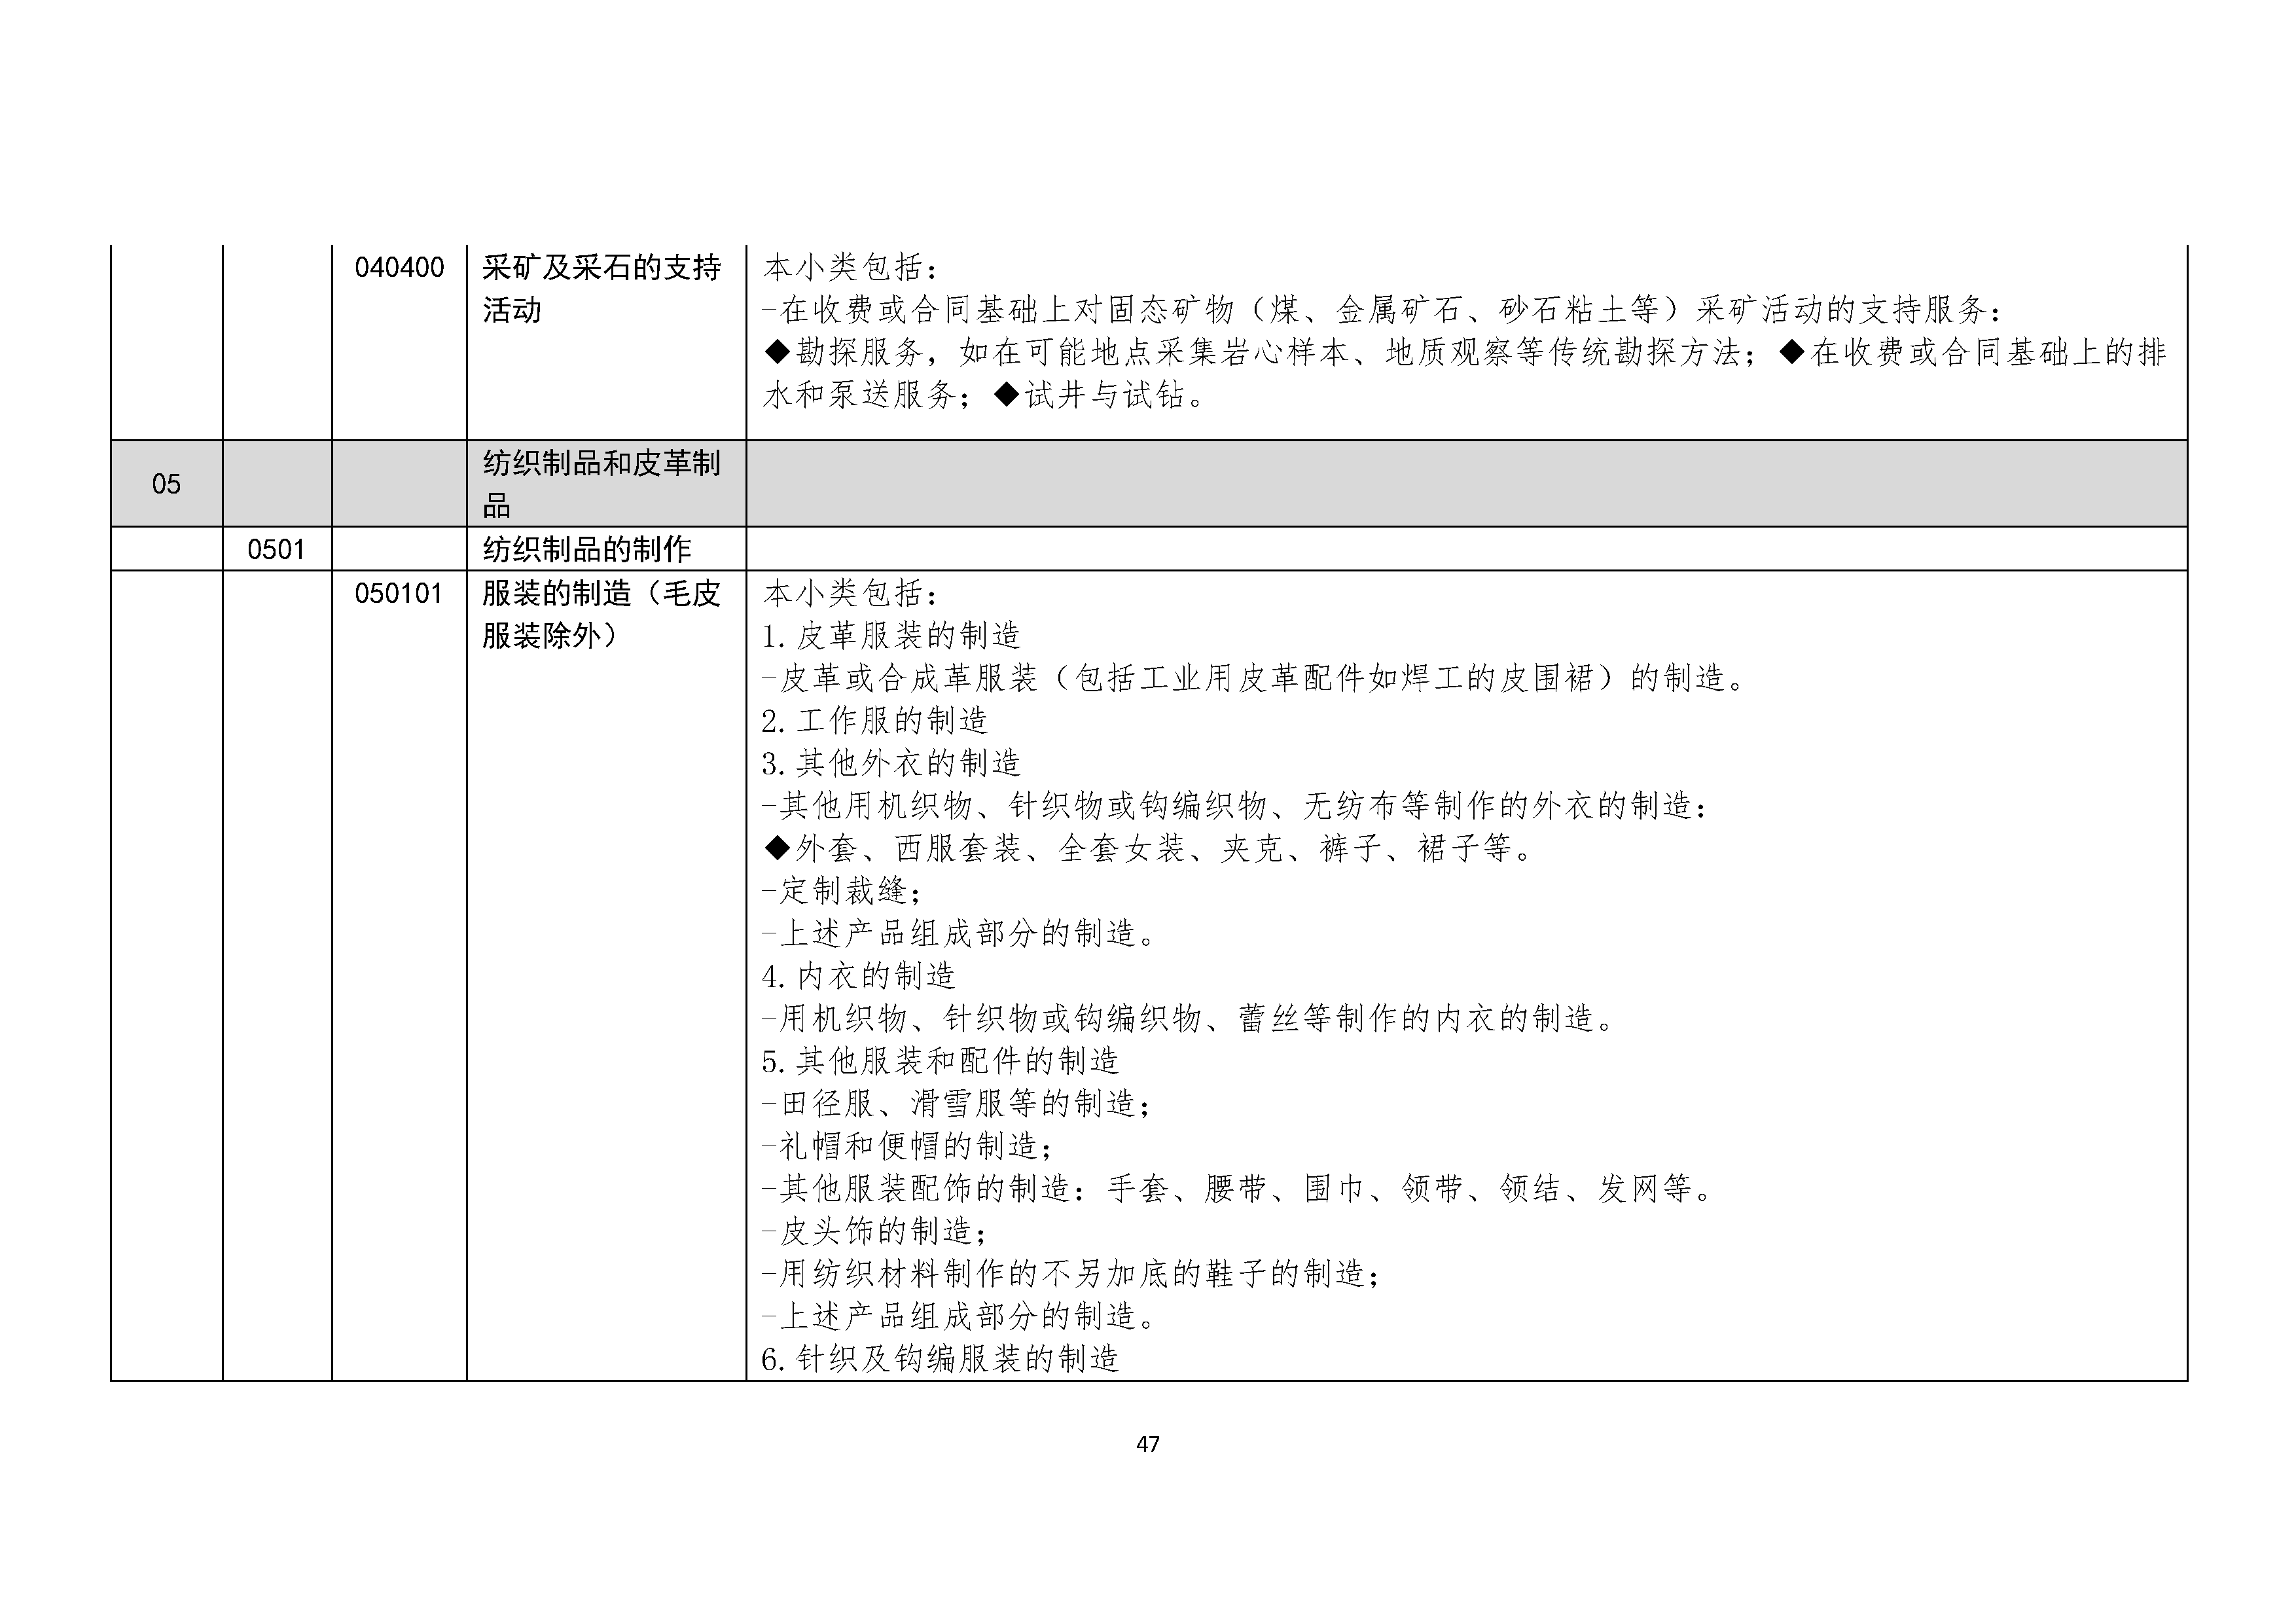 B.6《中国核能行业协会供应商评价供应商分类及产品专业范围划分规定》_页面_048.png